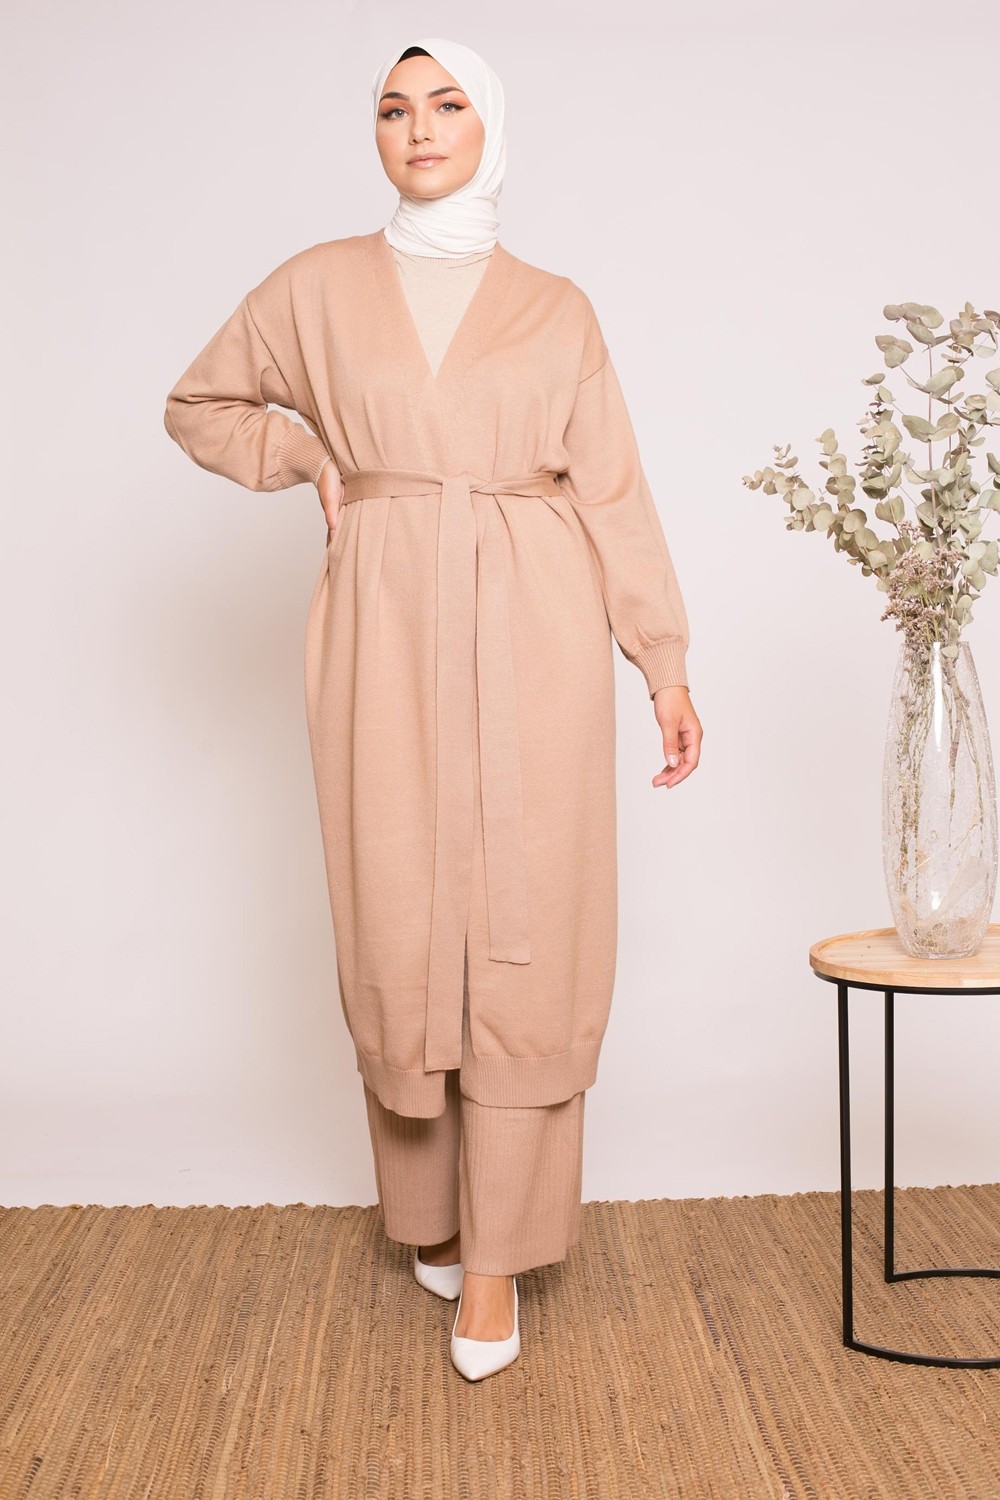 Gilet long beige foncé collection automne hiver prêt à porter modeste fashion pour femme musulmane